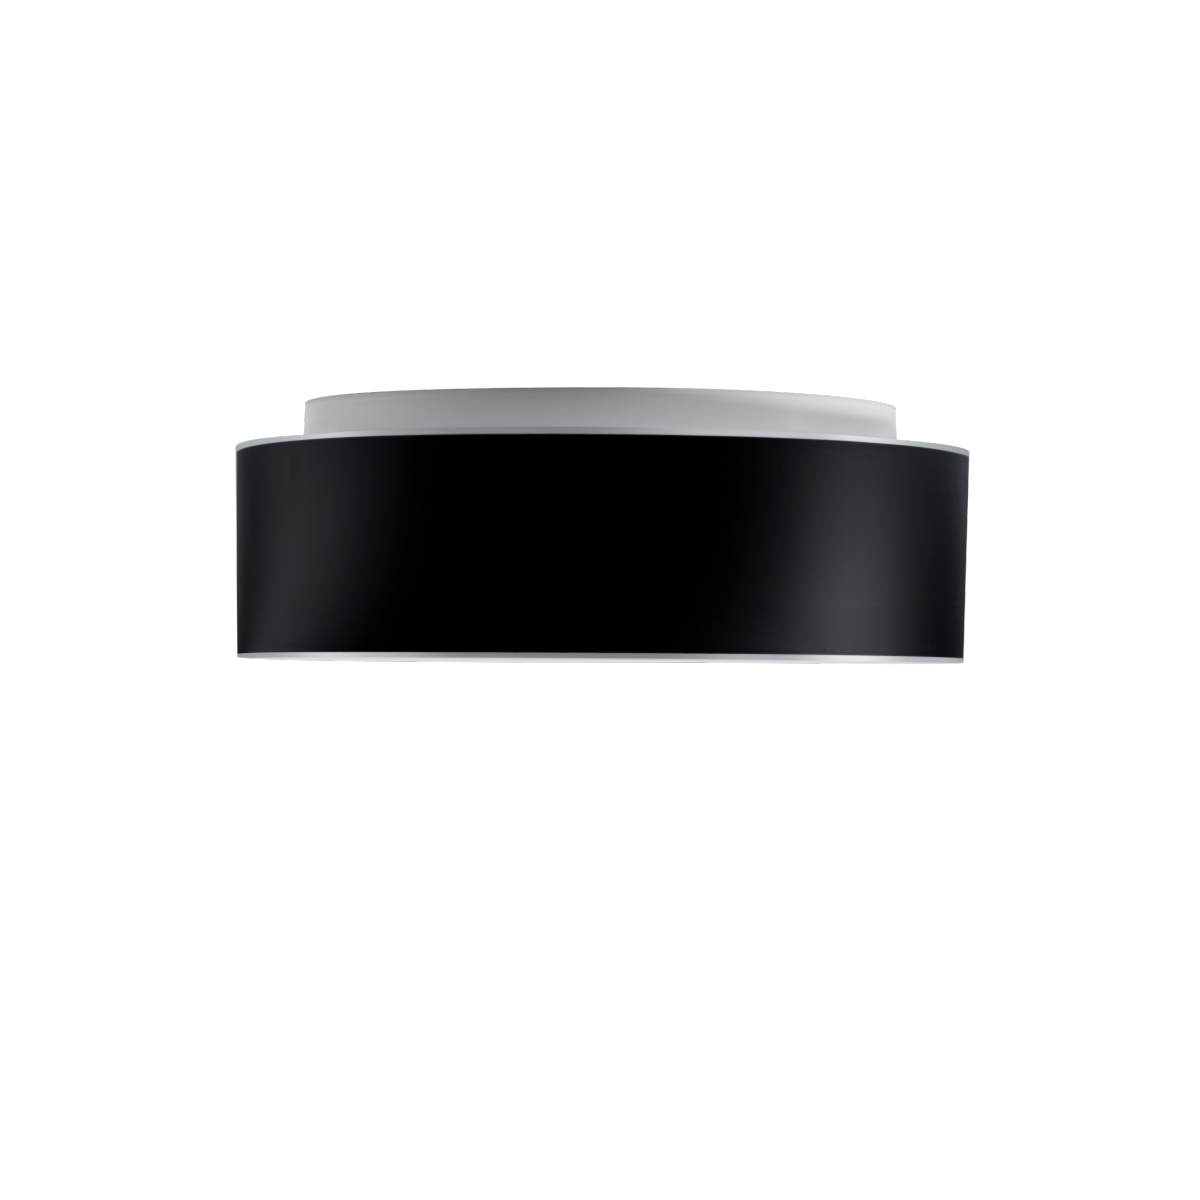 Runde Opalglas-Deckenleuchte ERIK mit schwarzer Blende, Ø 34 bis 54 cm: Durchmesser 34 cm (S)